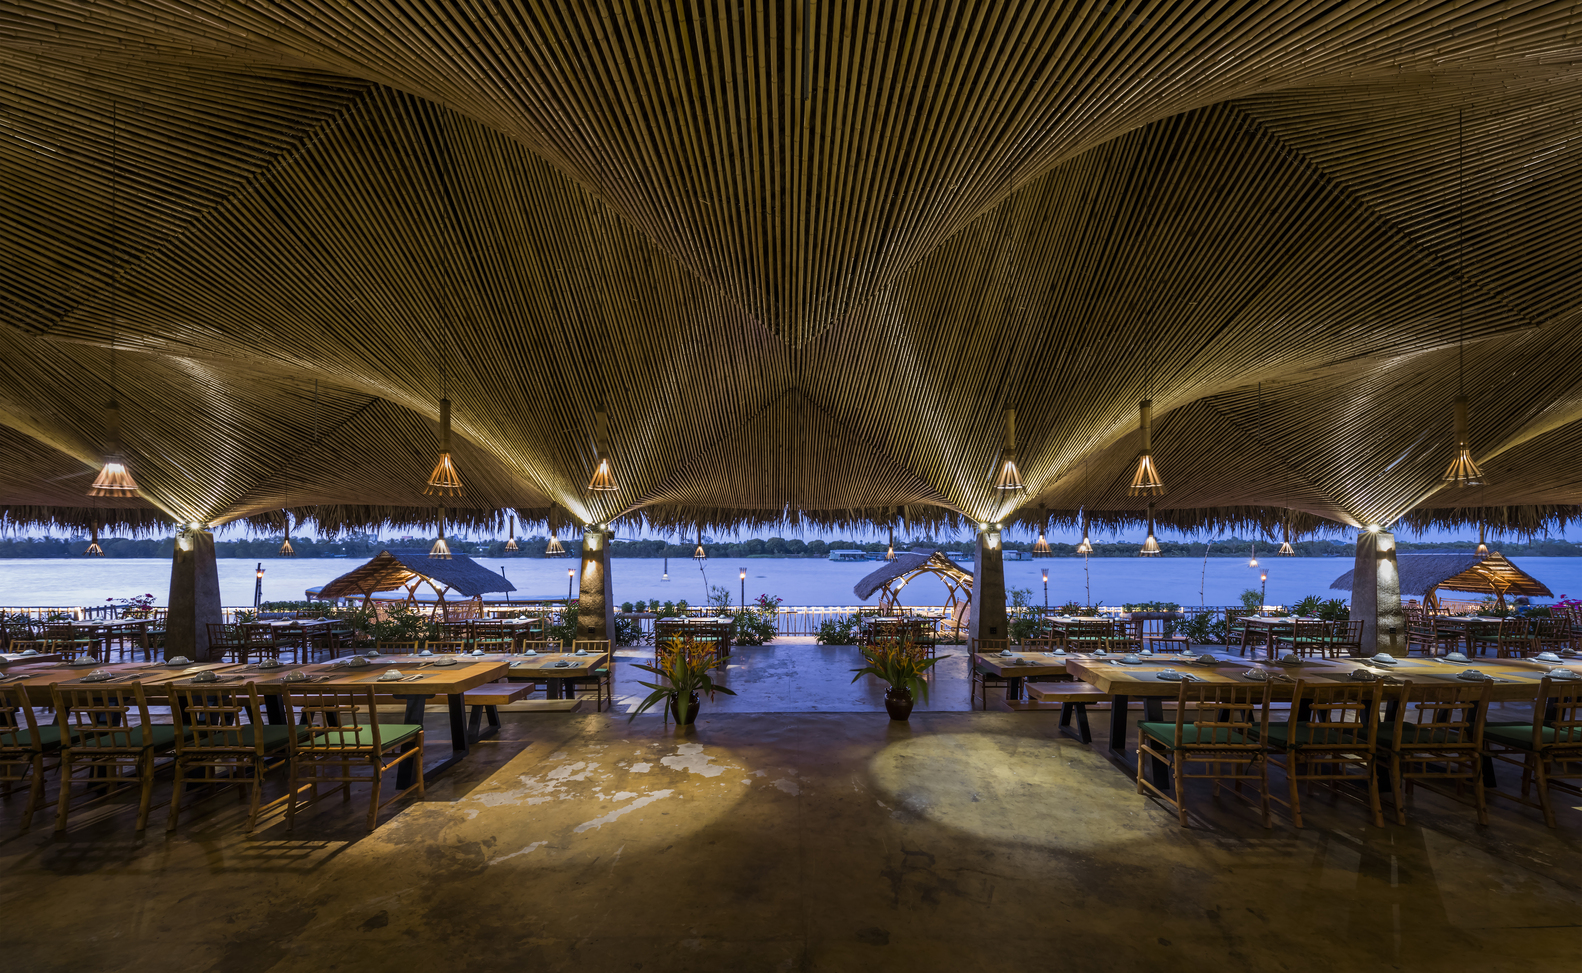 Nhà hàng mái dừa, thân tre ven sông ở miền Tây nổi bật trên báo ngoại - Ảnh 5.